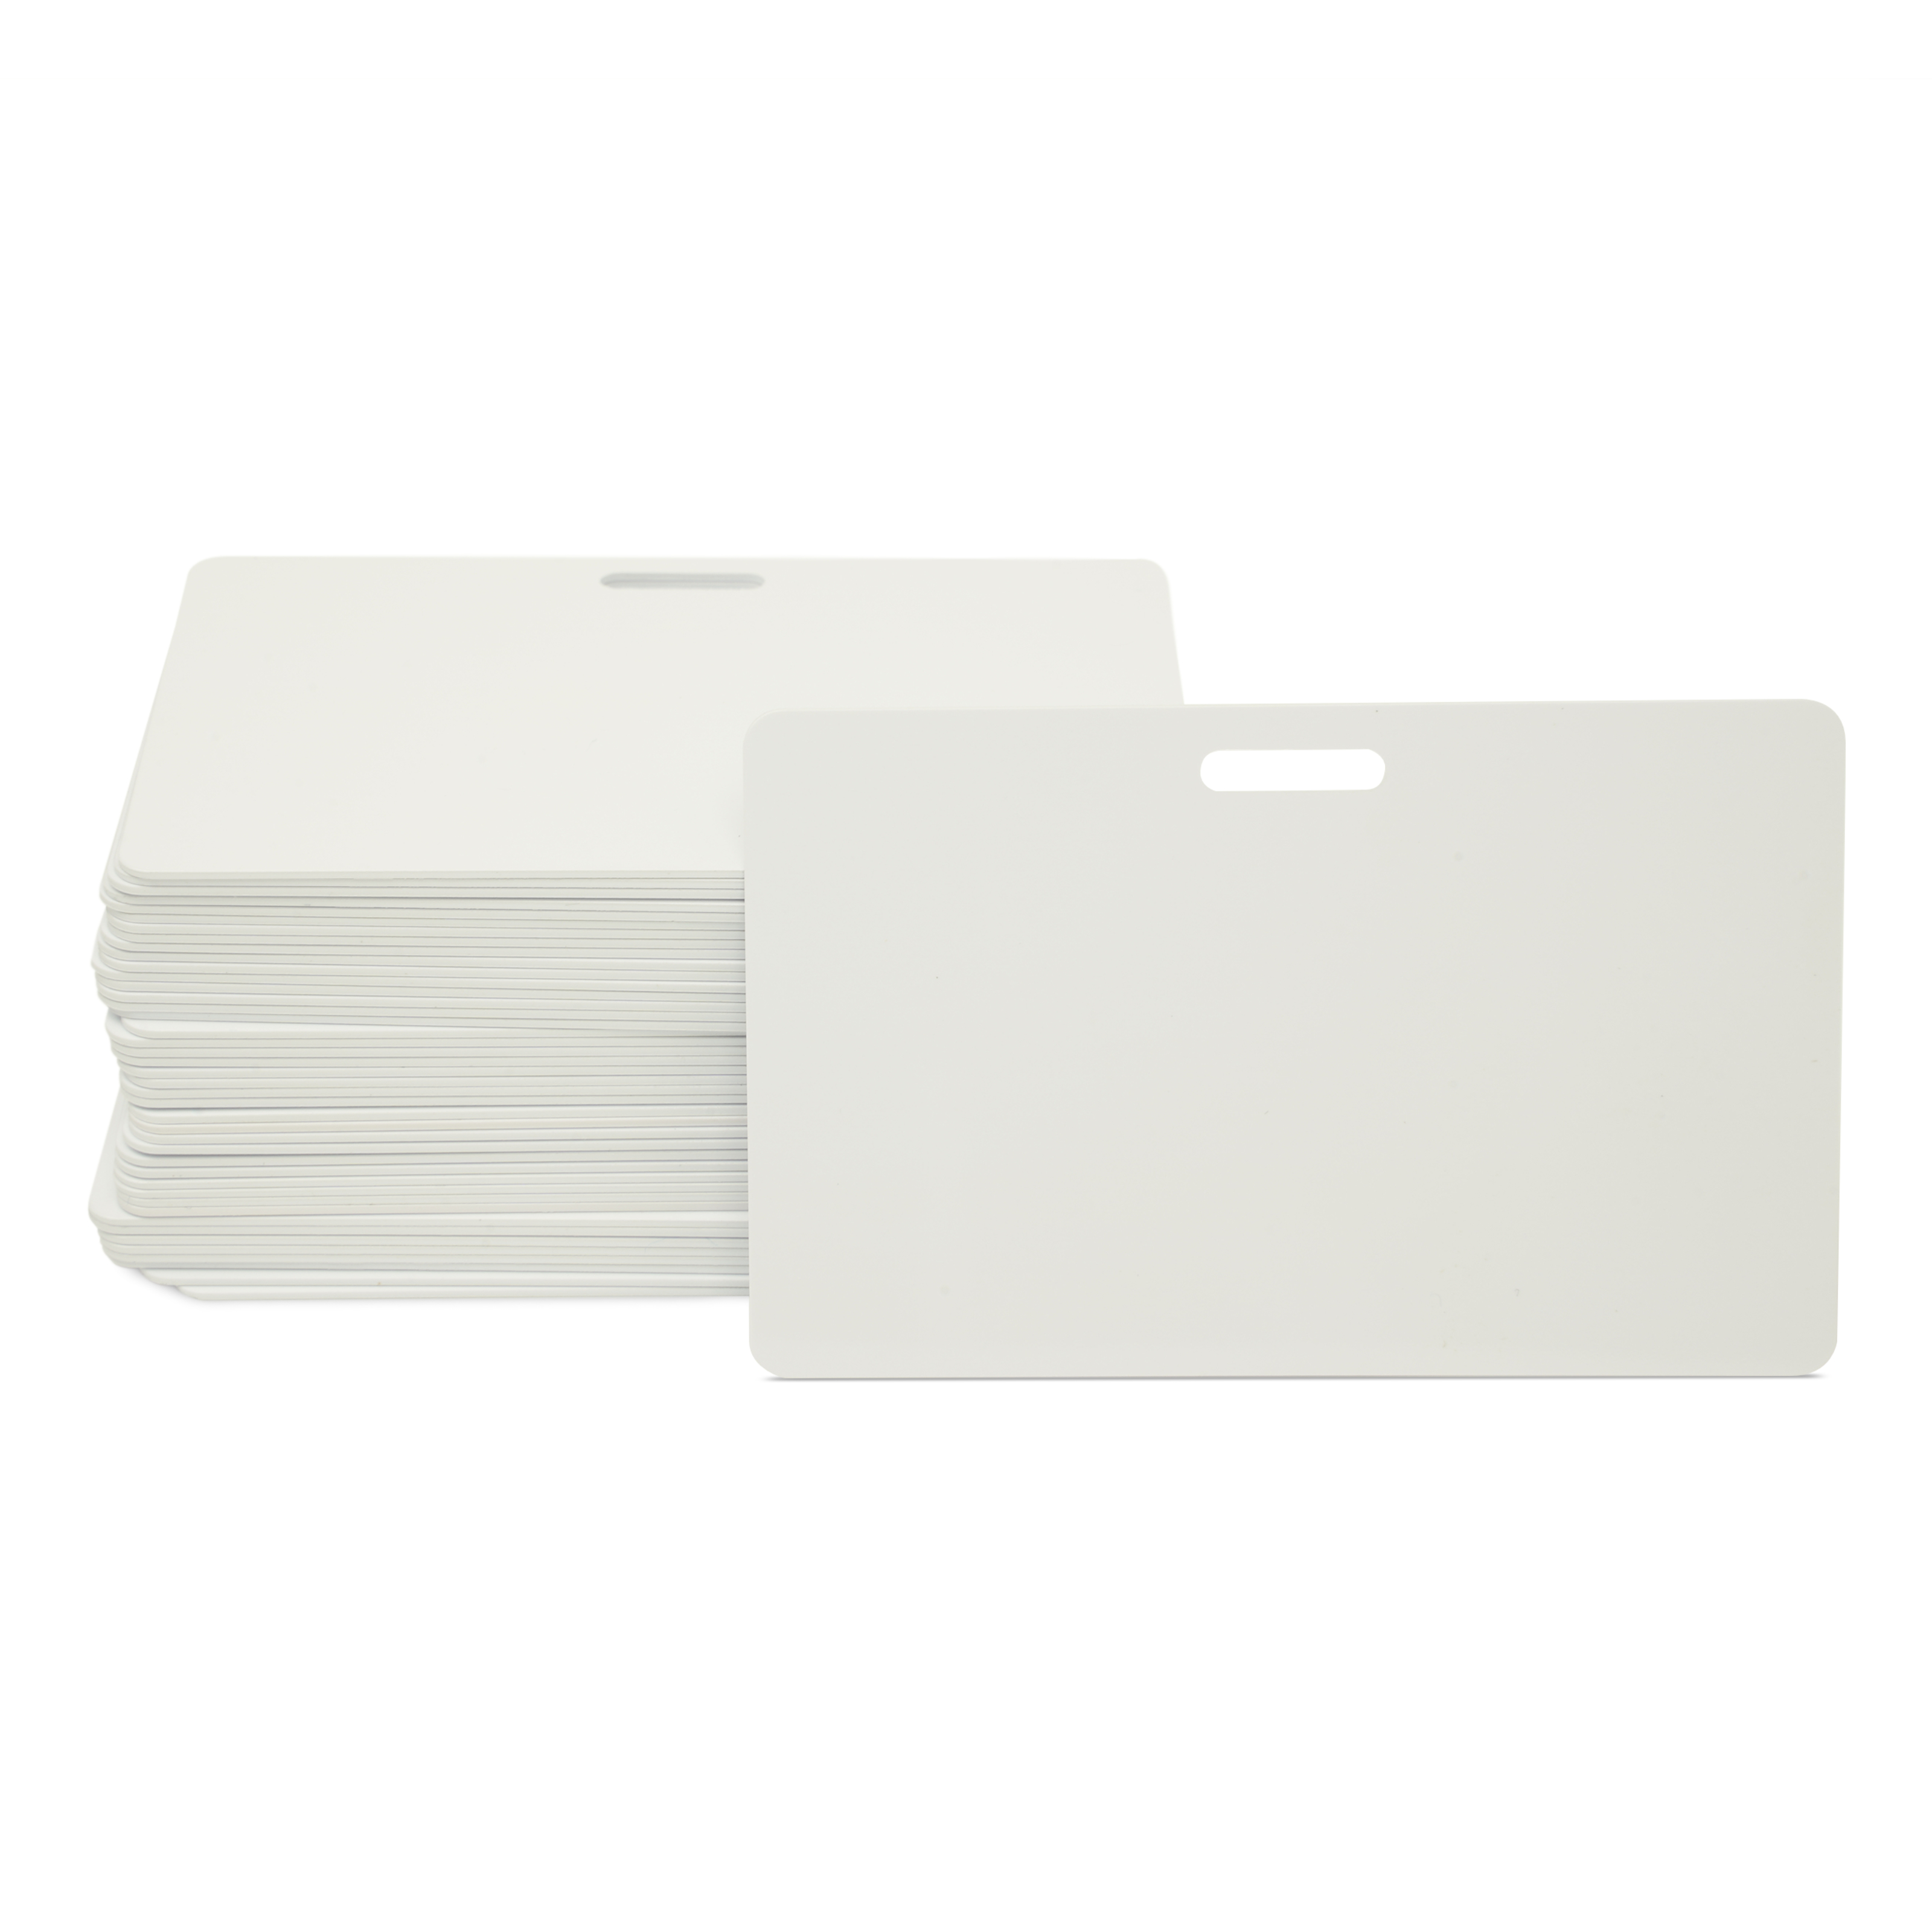 NFC Karte PVC - 85,6 x 54 mm - NTAG213 - 180 Byte - weiß - Querformat mit Schlitz